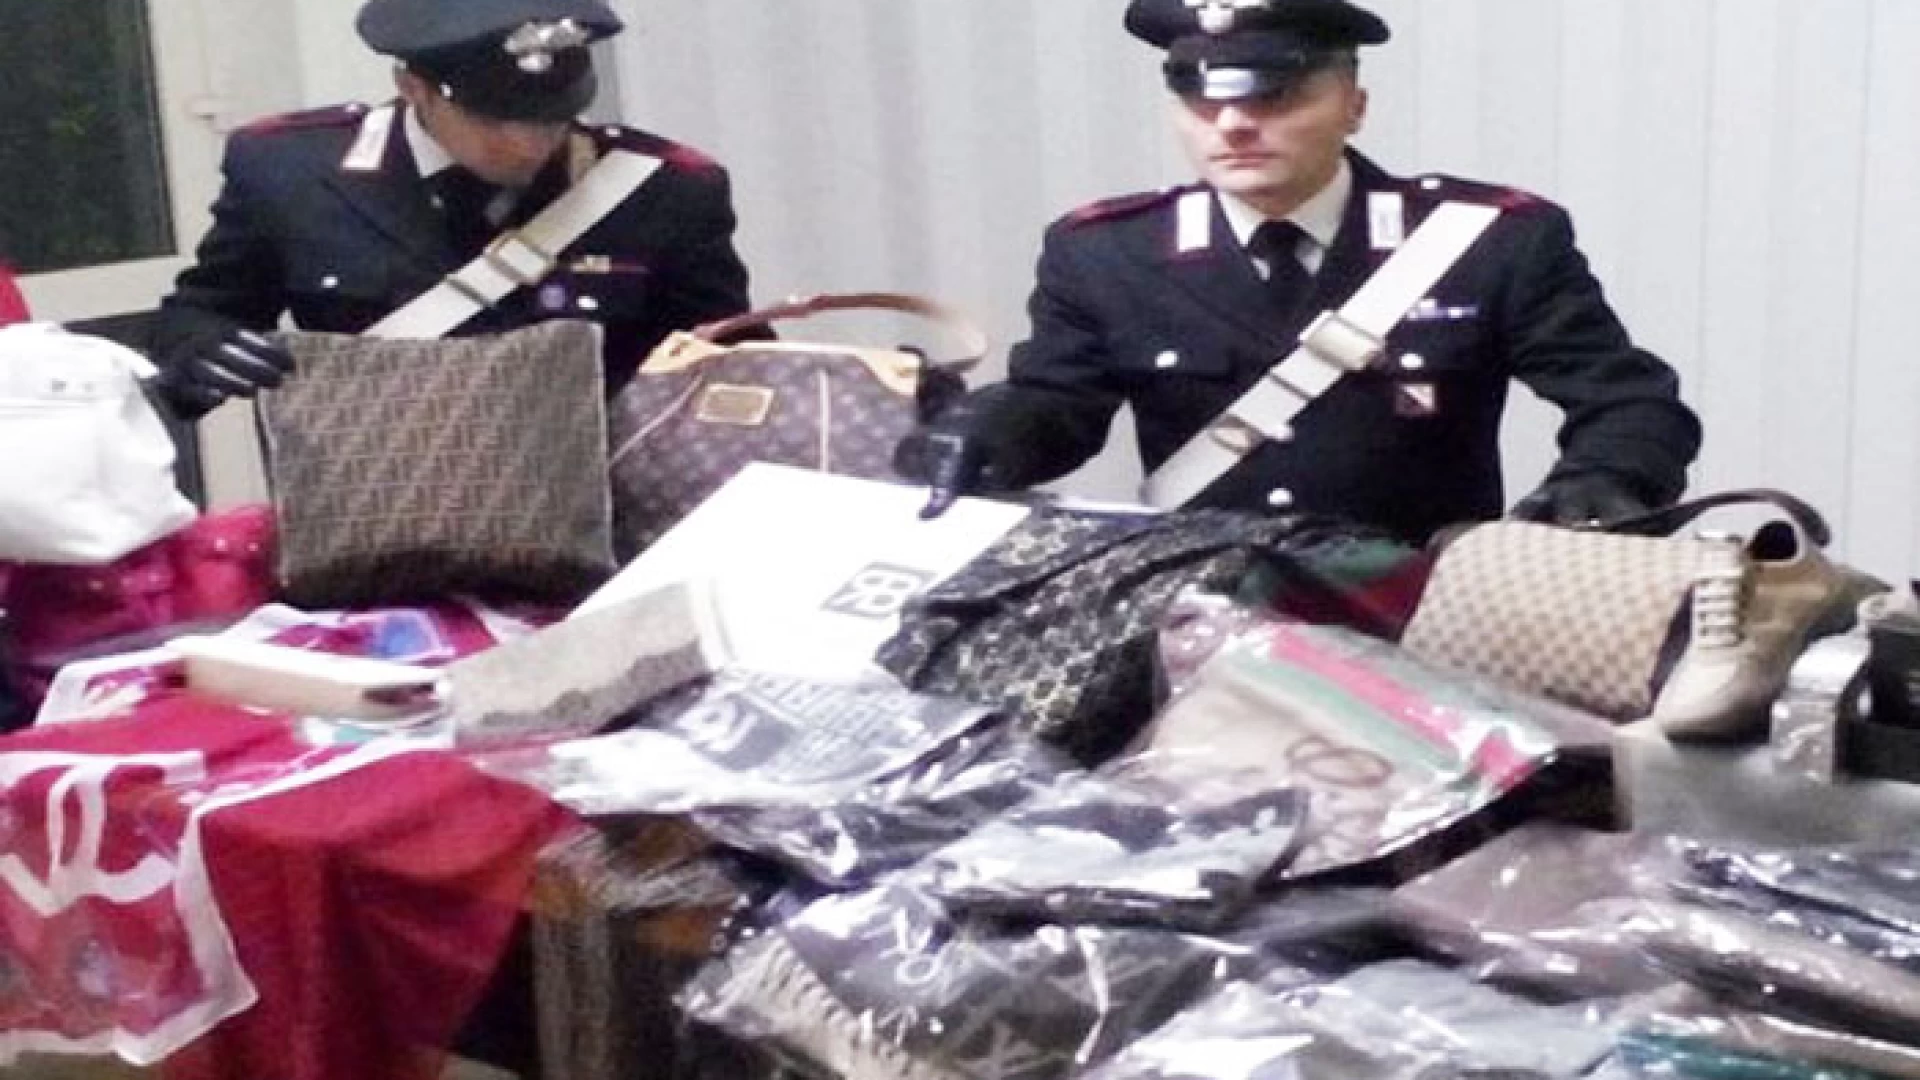 Venafro:	Operazione dei Carabinieri contro la contraffazione e il commercio abusivo, scattano denunce e sequestri.